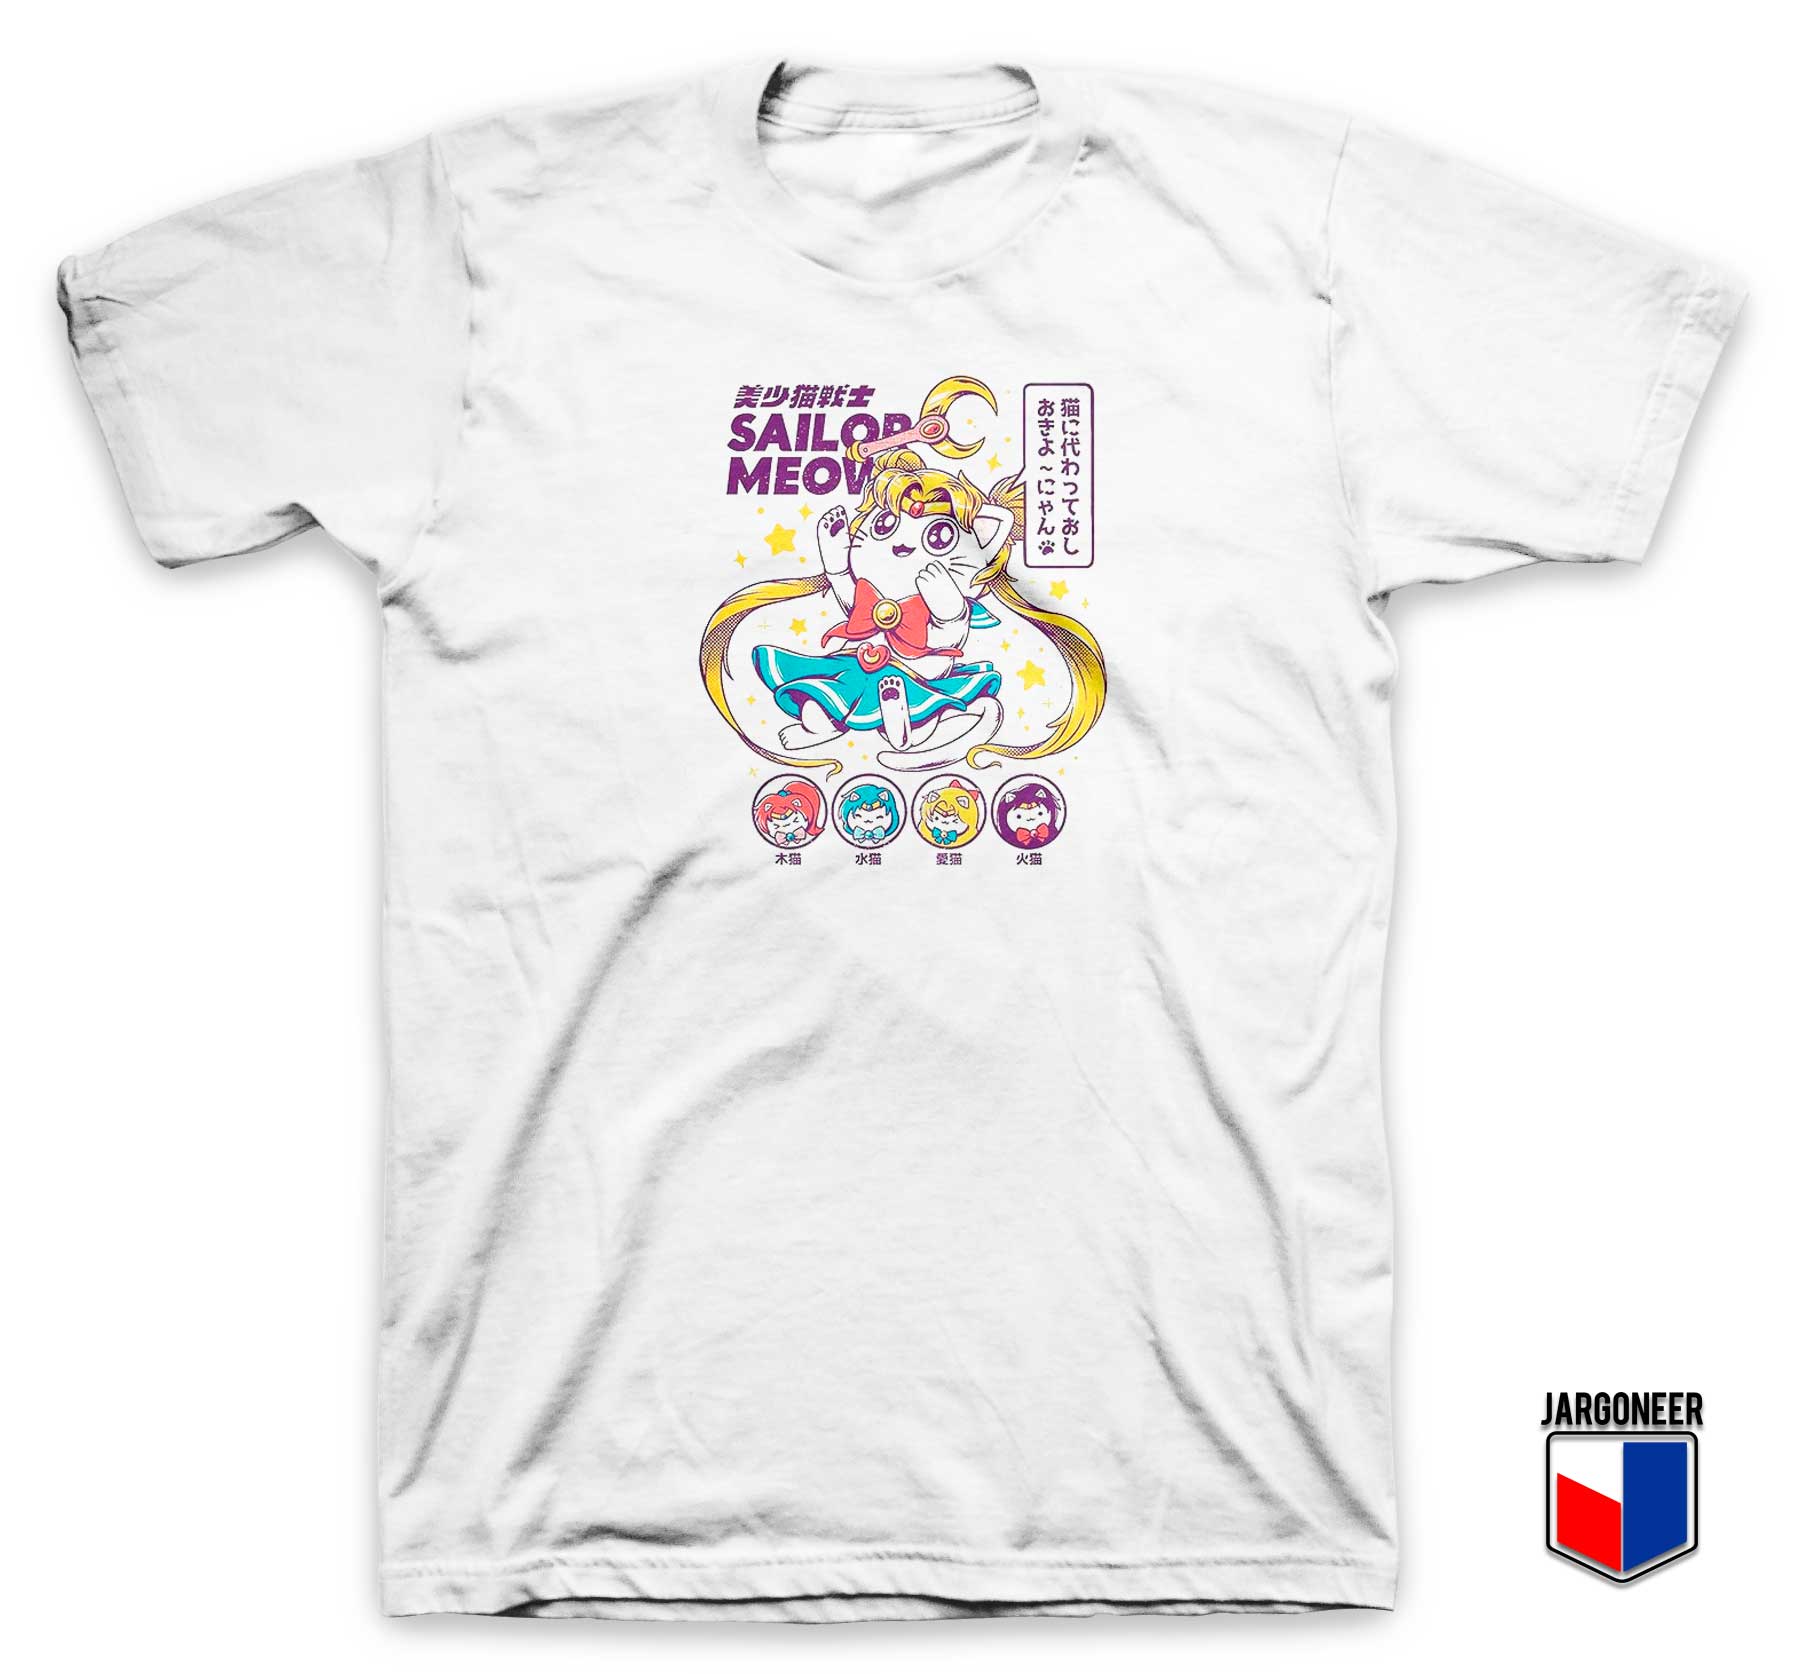 Chibi Sailor Meow Moon T Shirt - Shop Unique Graphic Cool Shirt Designs